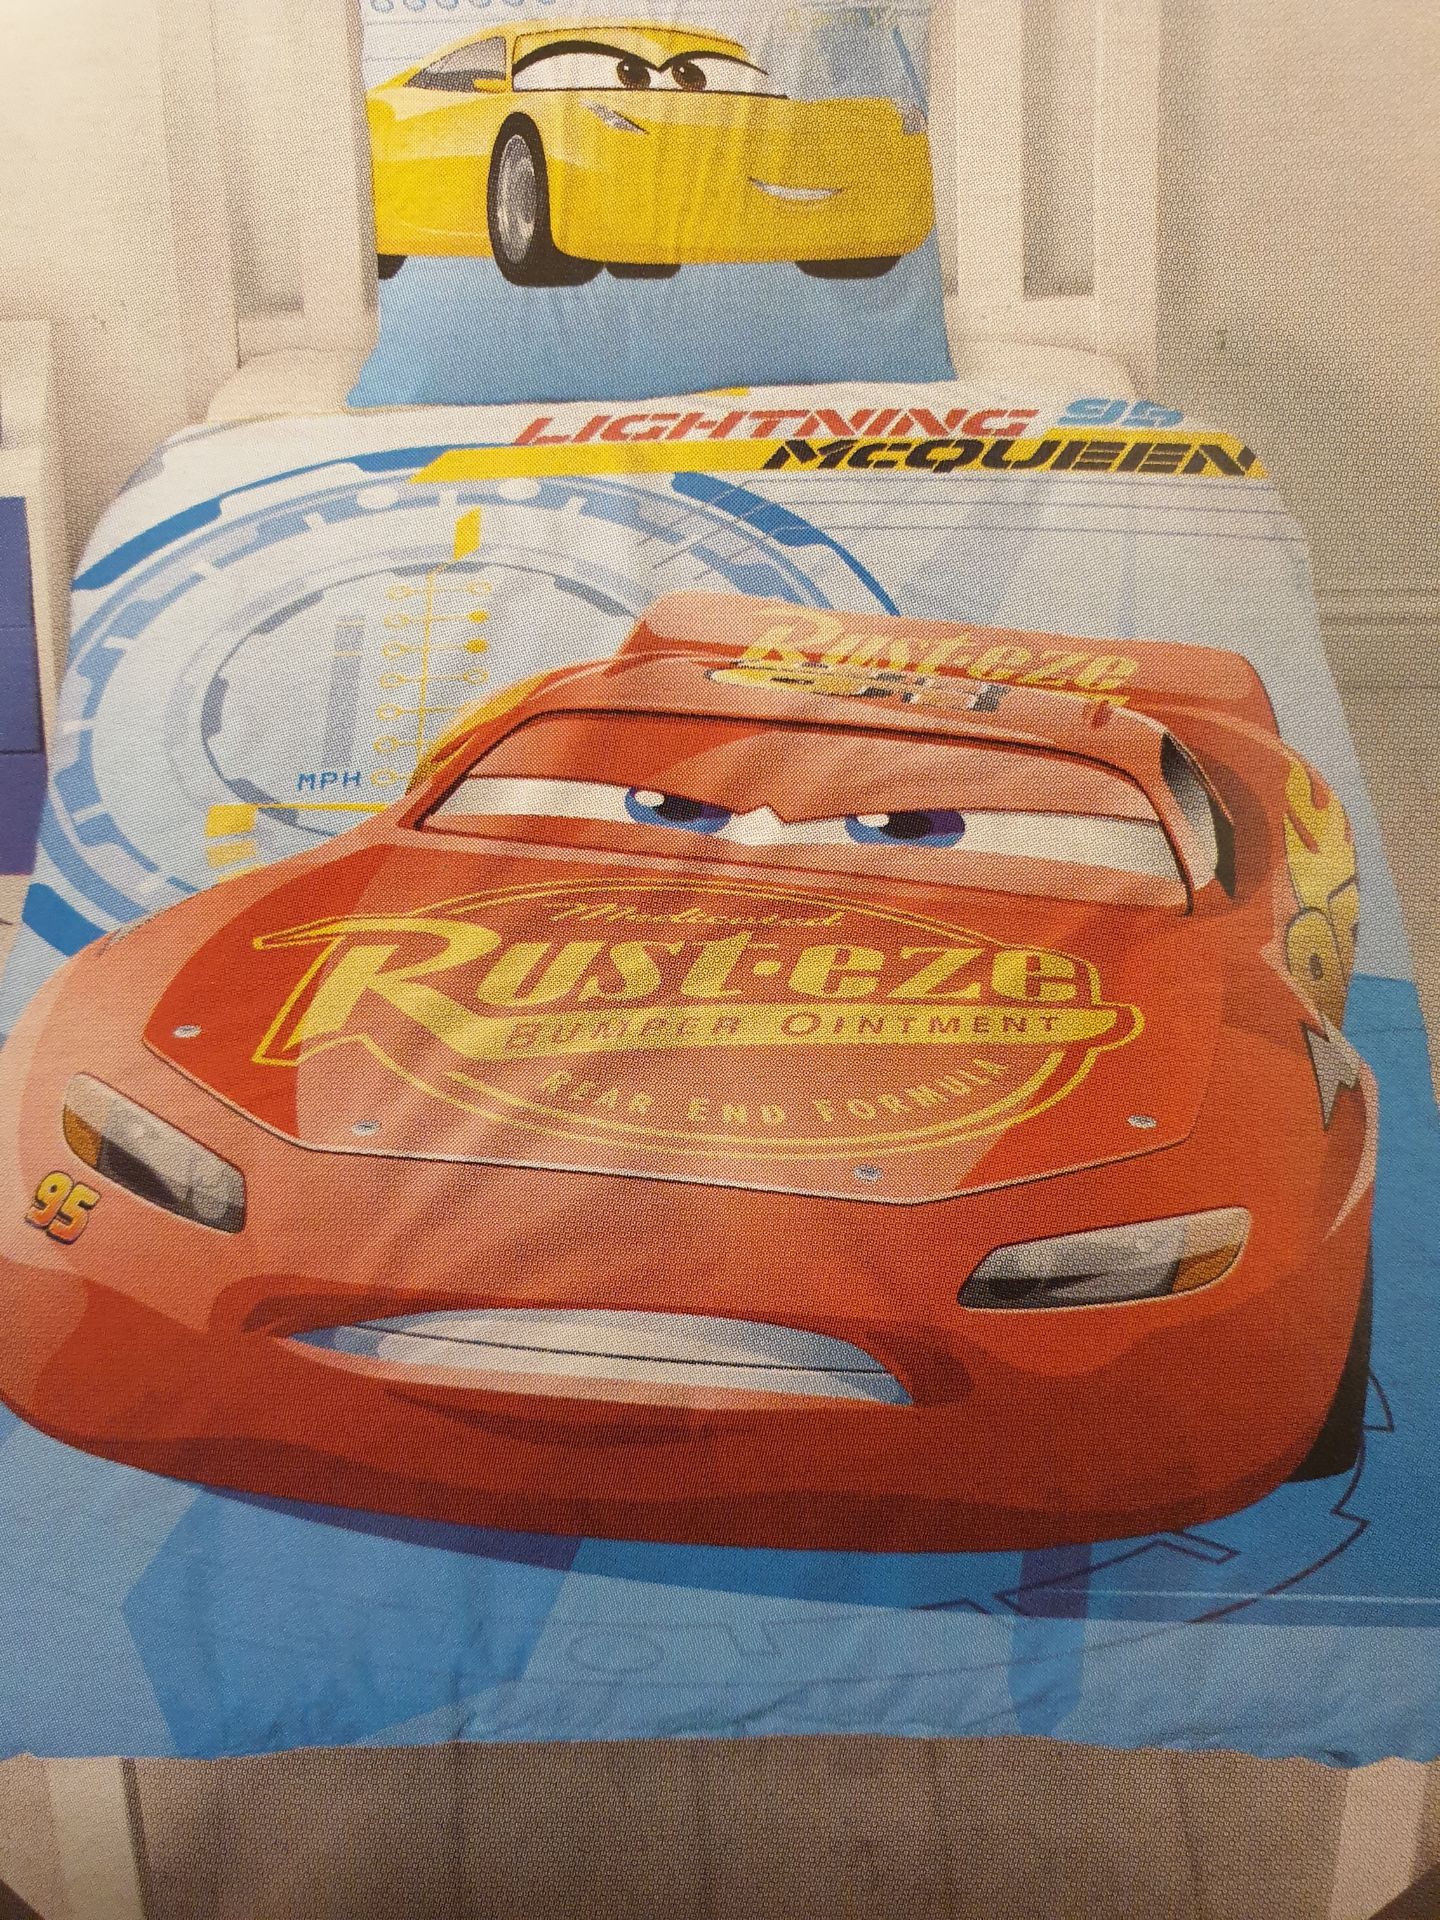 V Brand New Disney Pixar Cars 3 Single Bed Set - Image 2 of 4